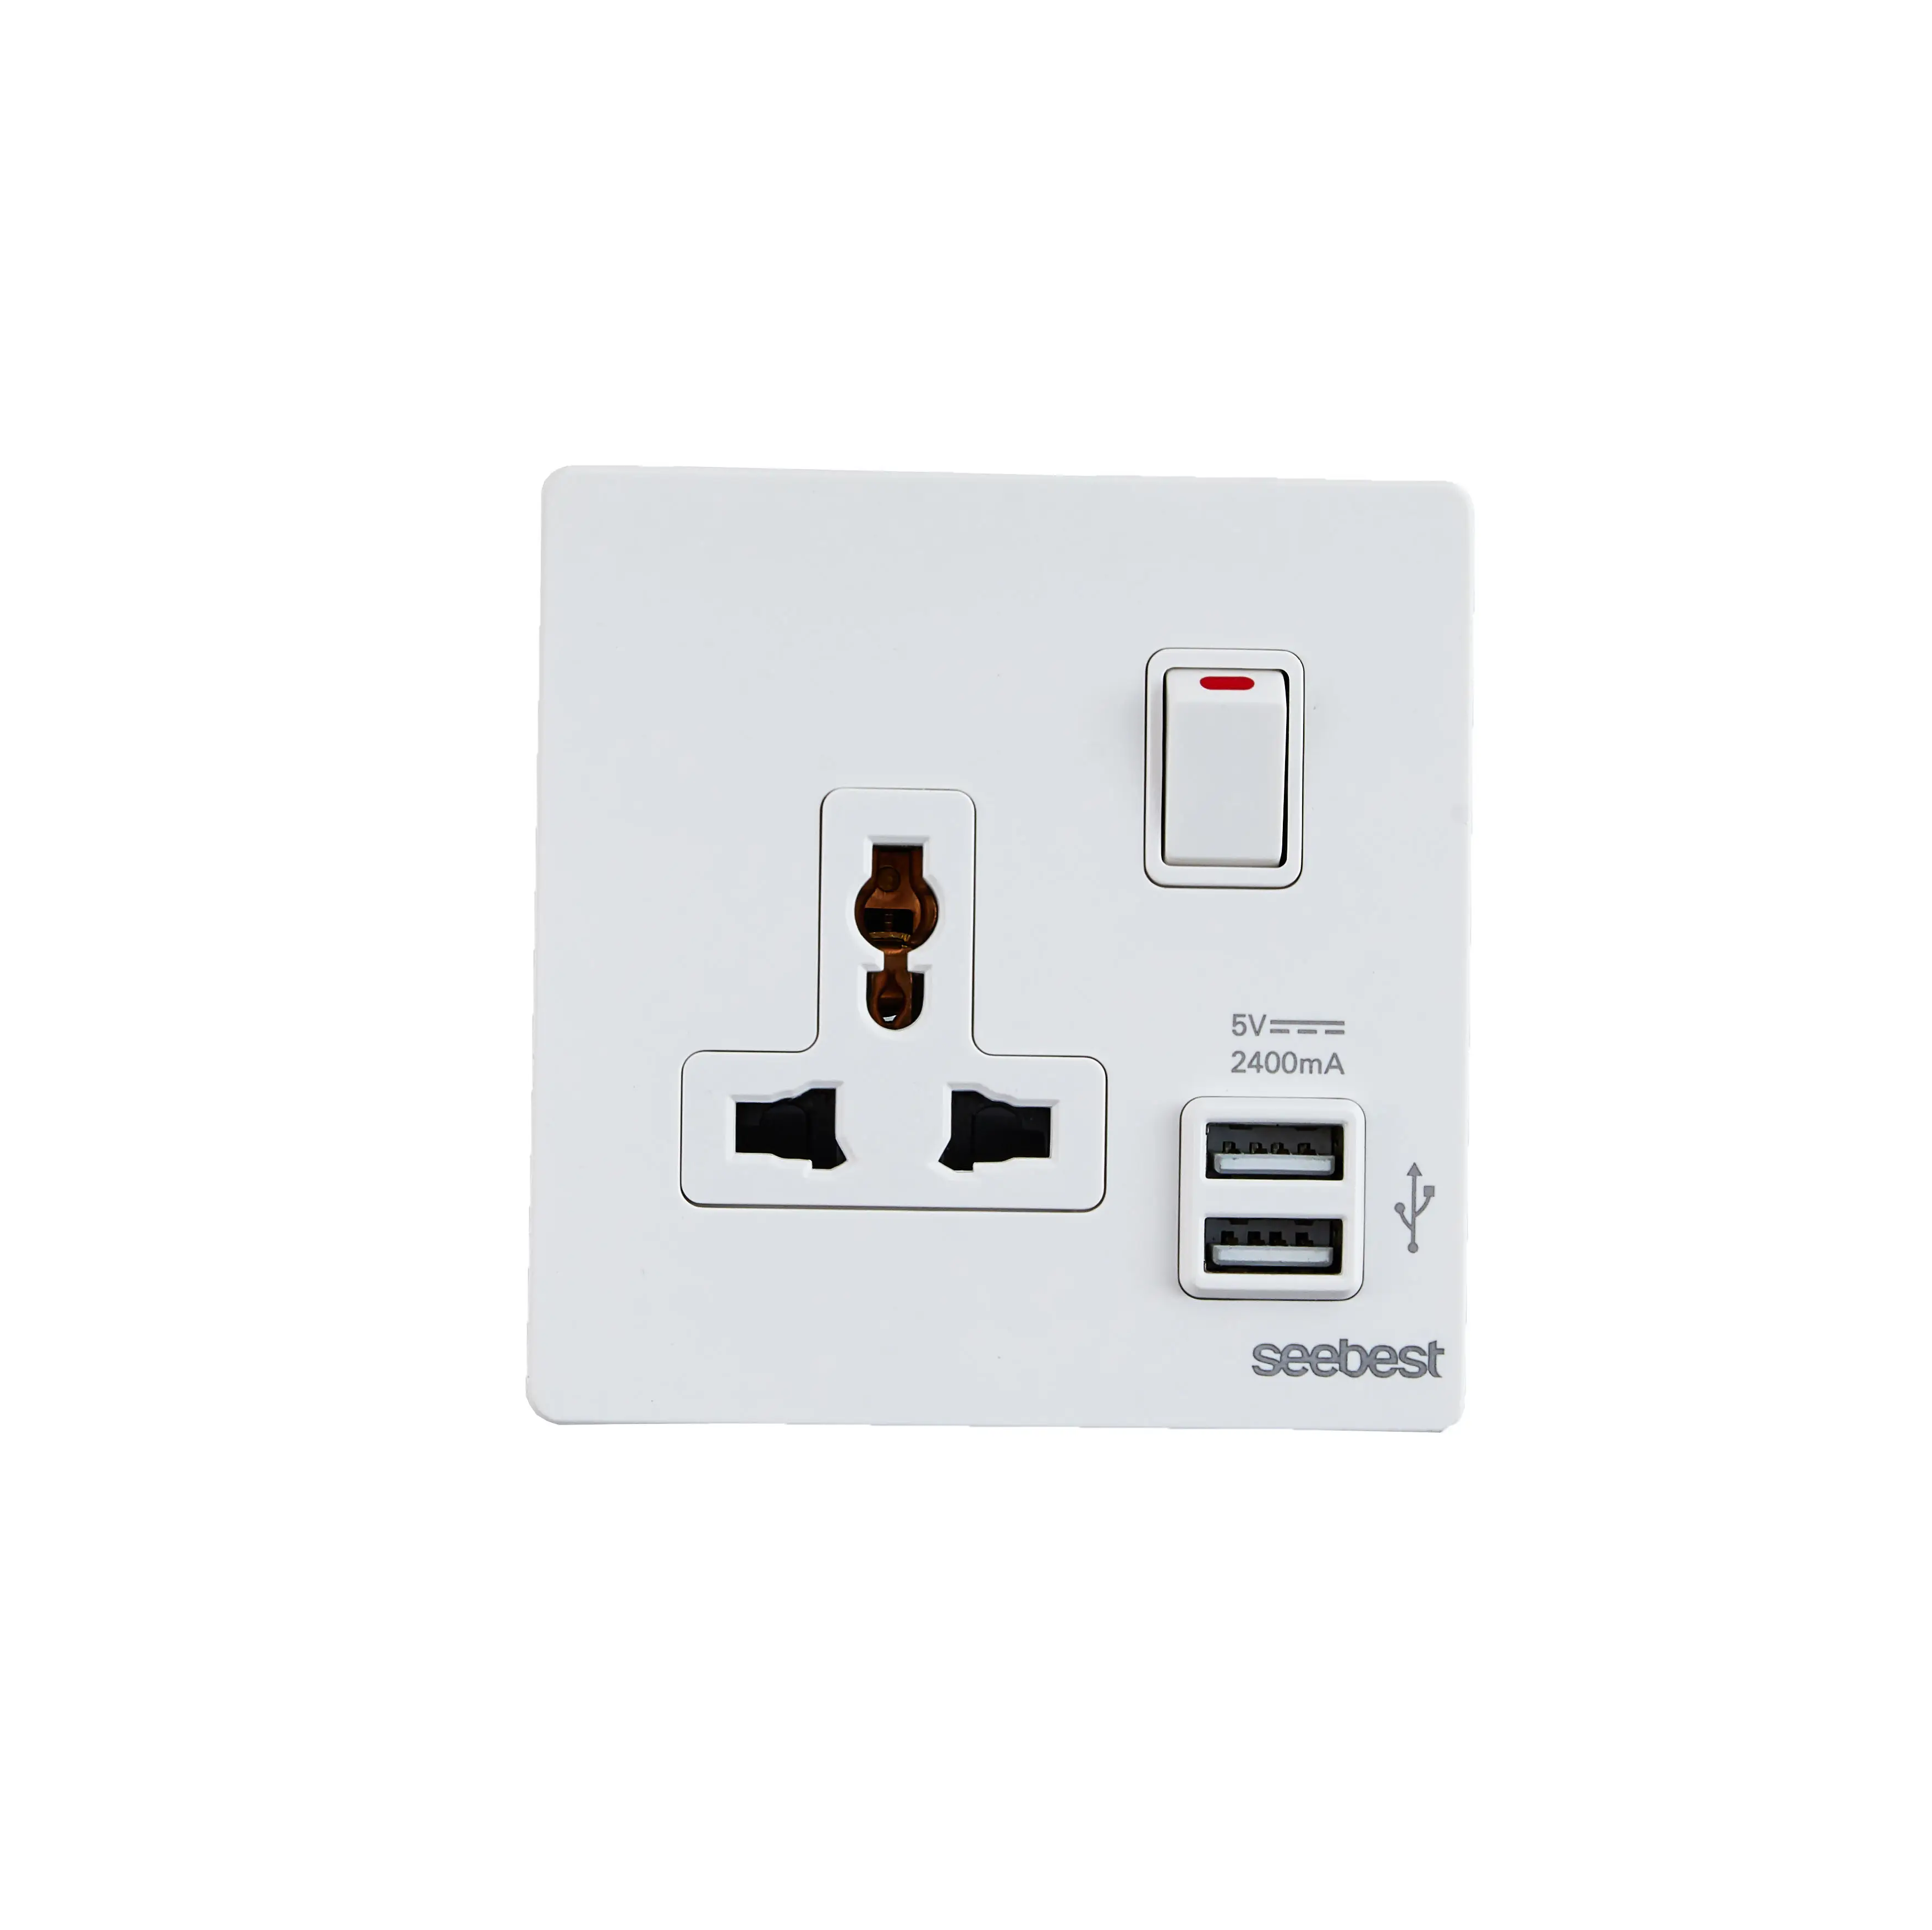 Popolare presa Standard universale presa elettrica per interruttore a parete con porta USB e indicatore luminoso per la casa